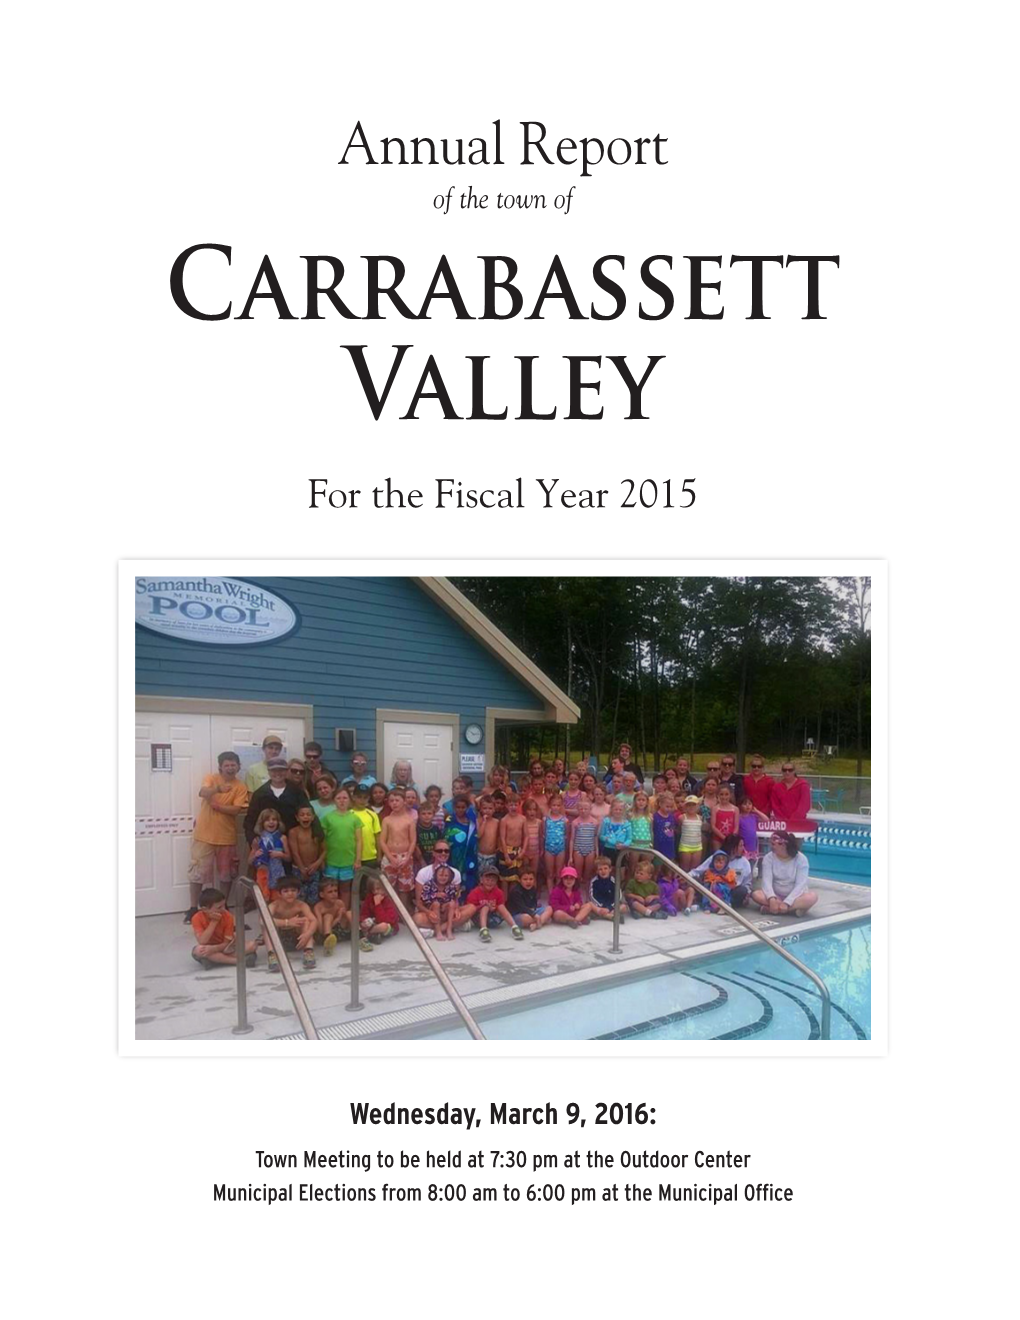 Carrabassett Valley Sanitary District Village West #35 Carrabassett Valley, Maine 04947